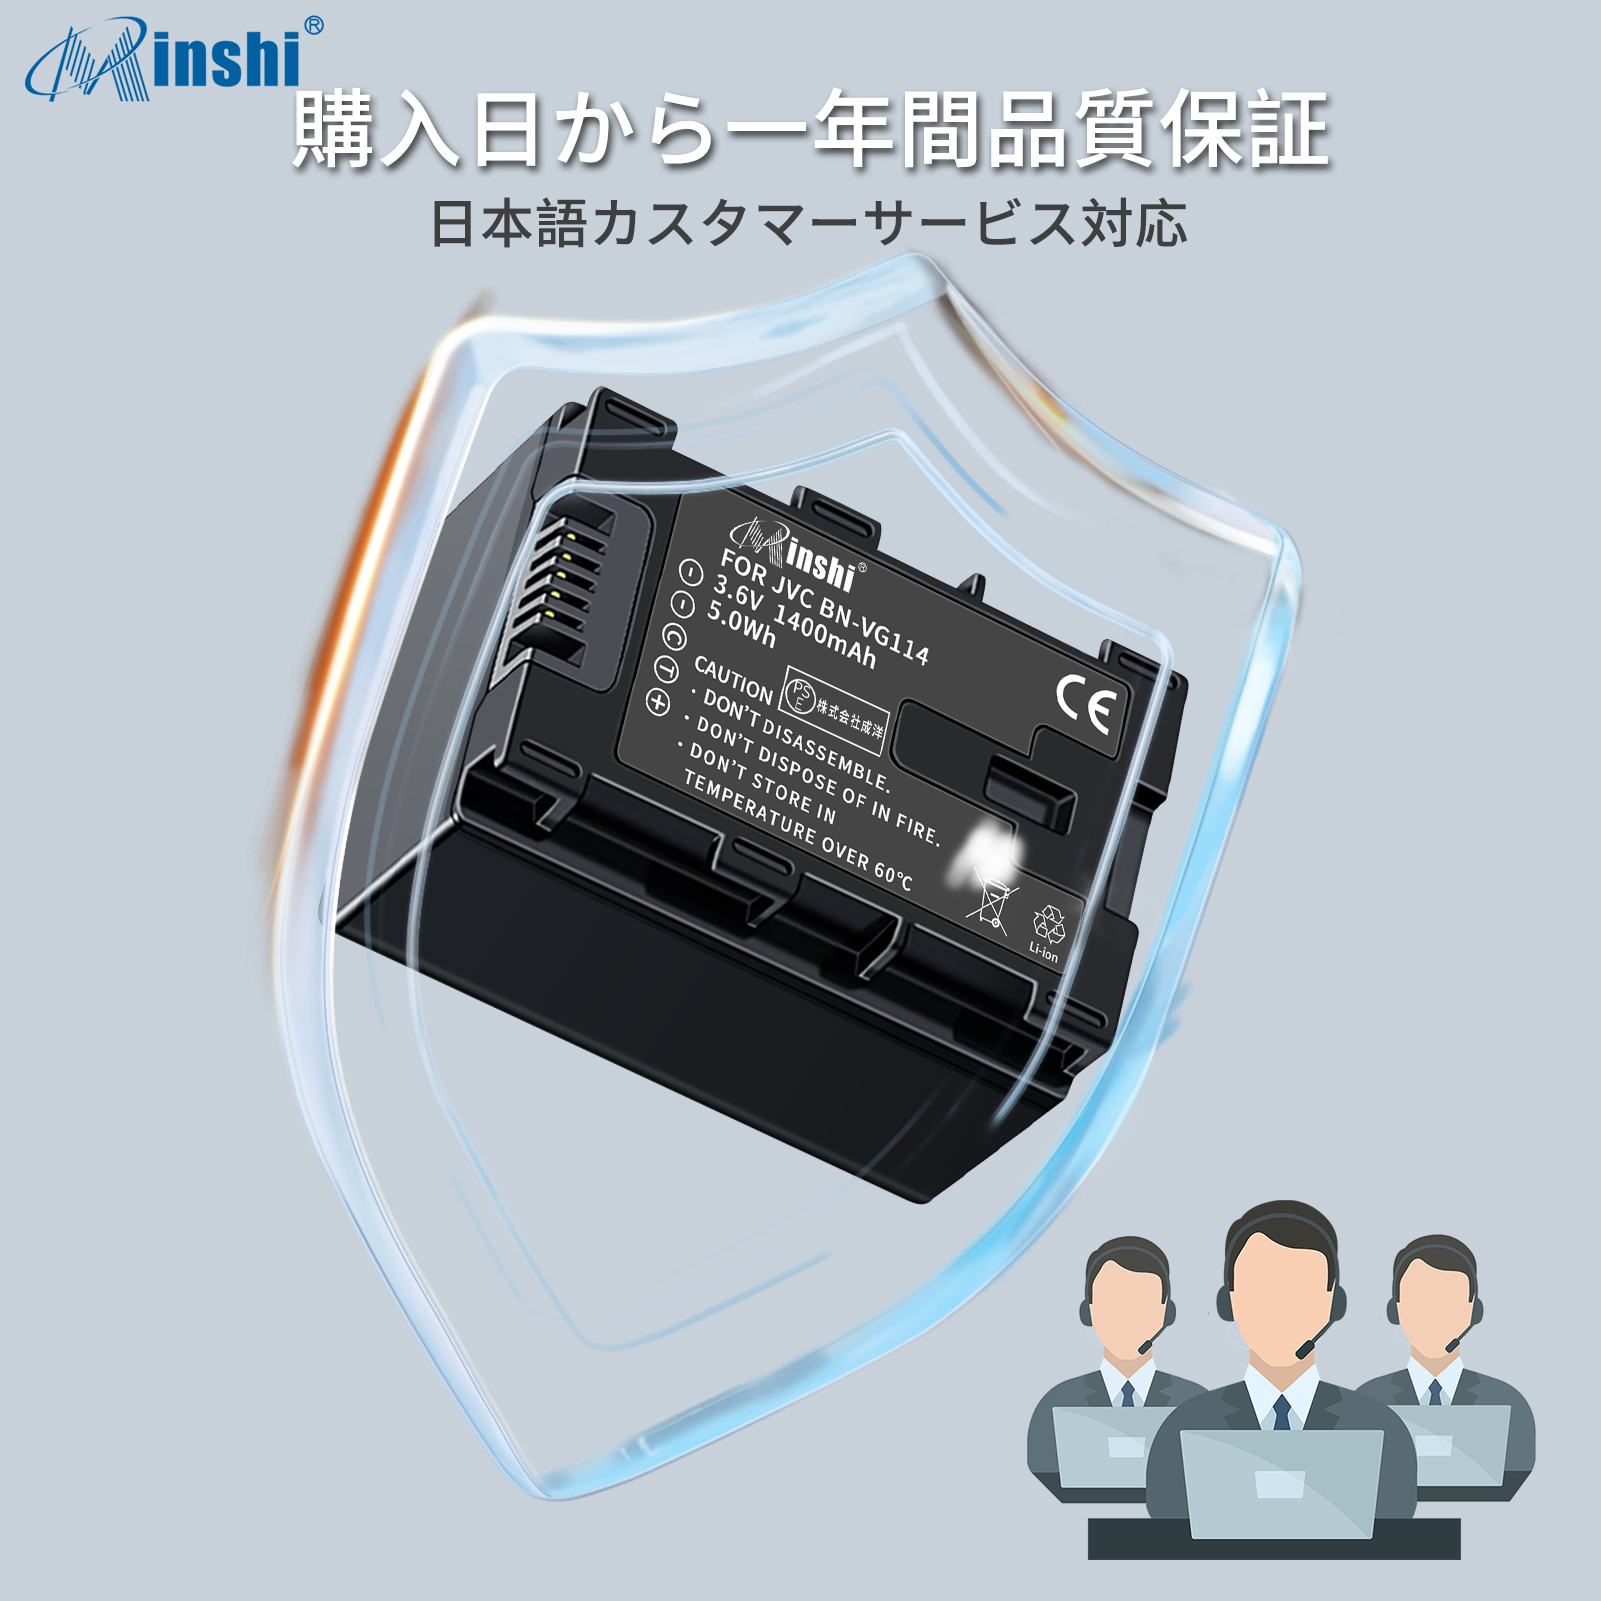 世界を買える 【２個セット】 minshi VICTOR GZ-G5 BN-VG121 対応 互換バッテリー 1400mAh PSE認定済 高品質交換用バッテリー